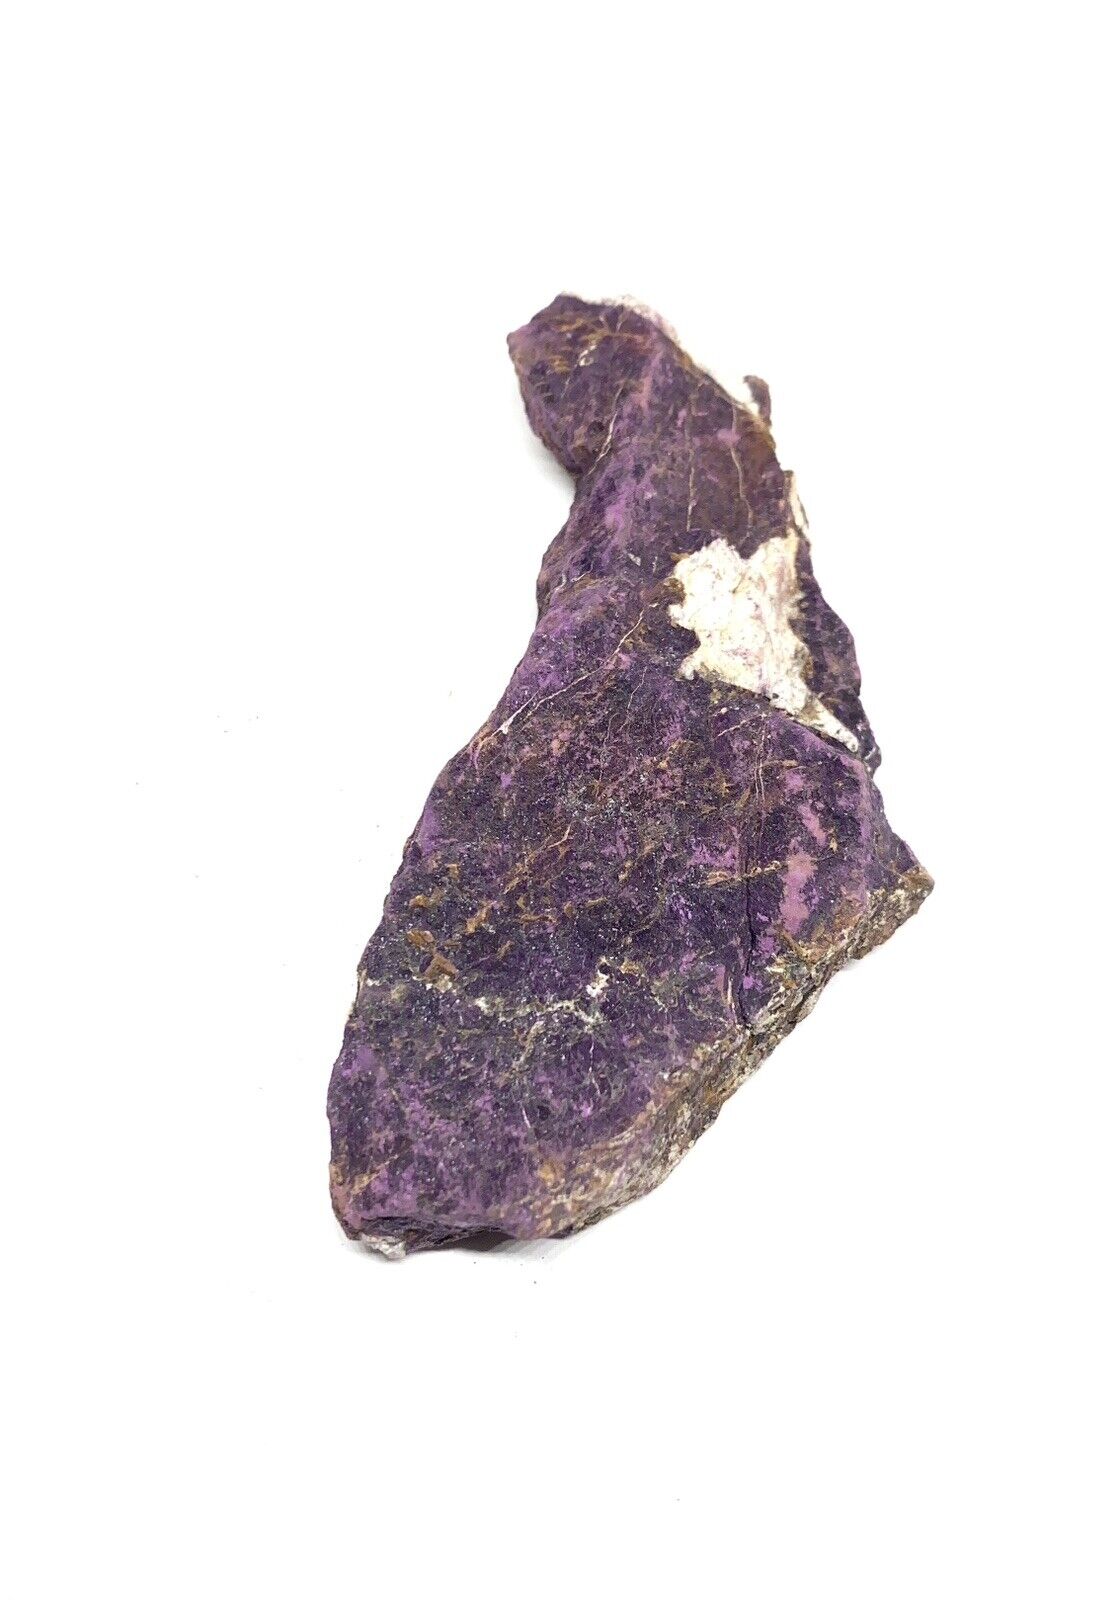 Purpurite Genuine Rough Stone 68g  From Africa RARE